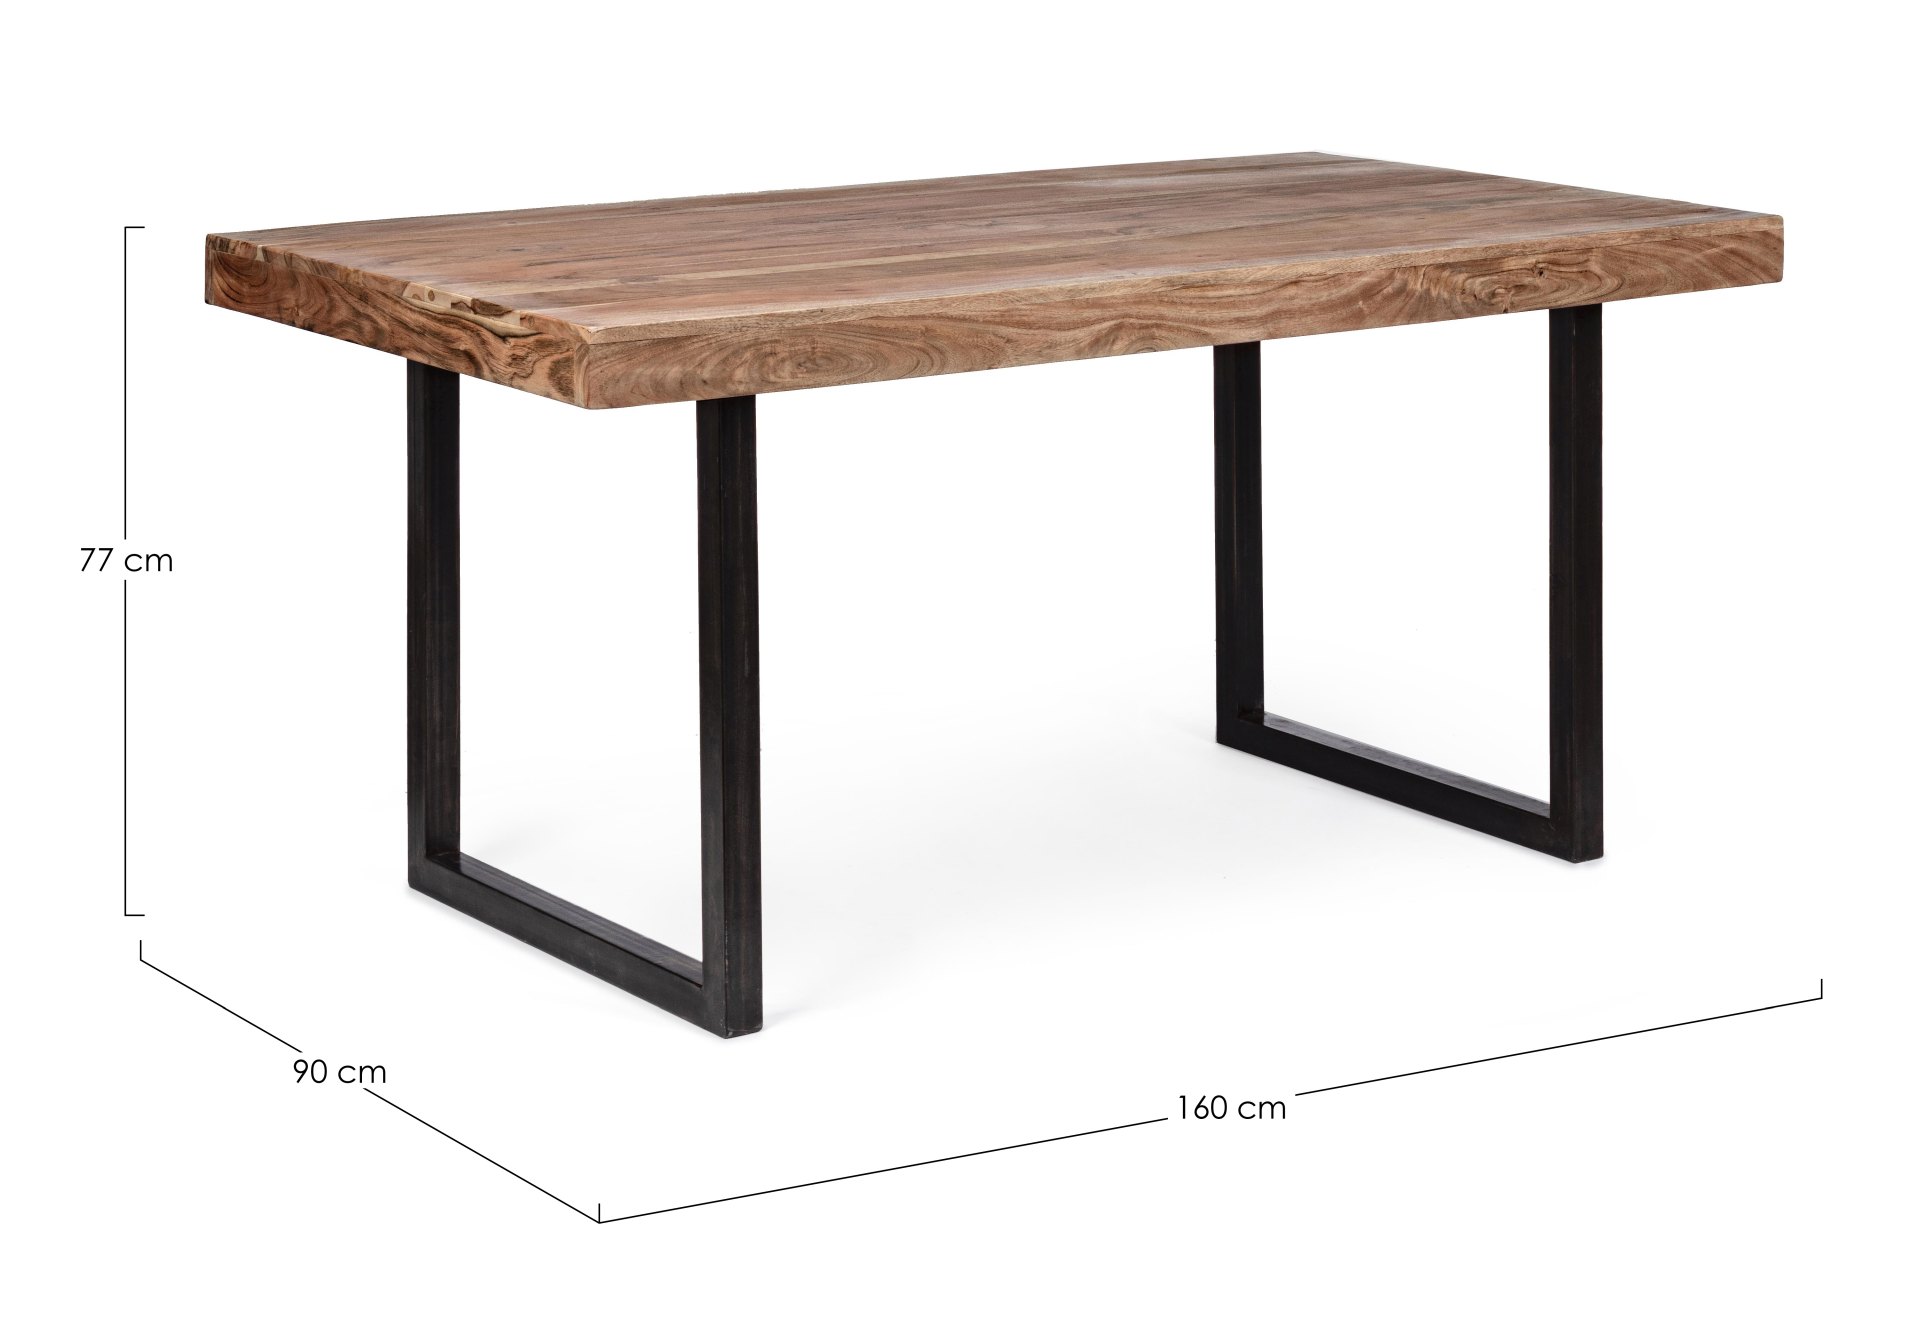 Der Esstisch Egon überzeugt mit seinem moderndem Design. Gefertigt wurde er aus Akazienholz, welches einen natürlichen Farbton besitzt. Das Gestell des Tisches ist aus Metall und ist in eine schwarze Farbe. Der Tisch besitzt eine Breite von 160 cm.